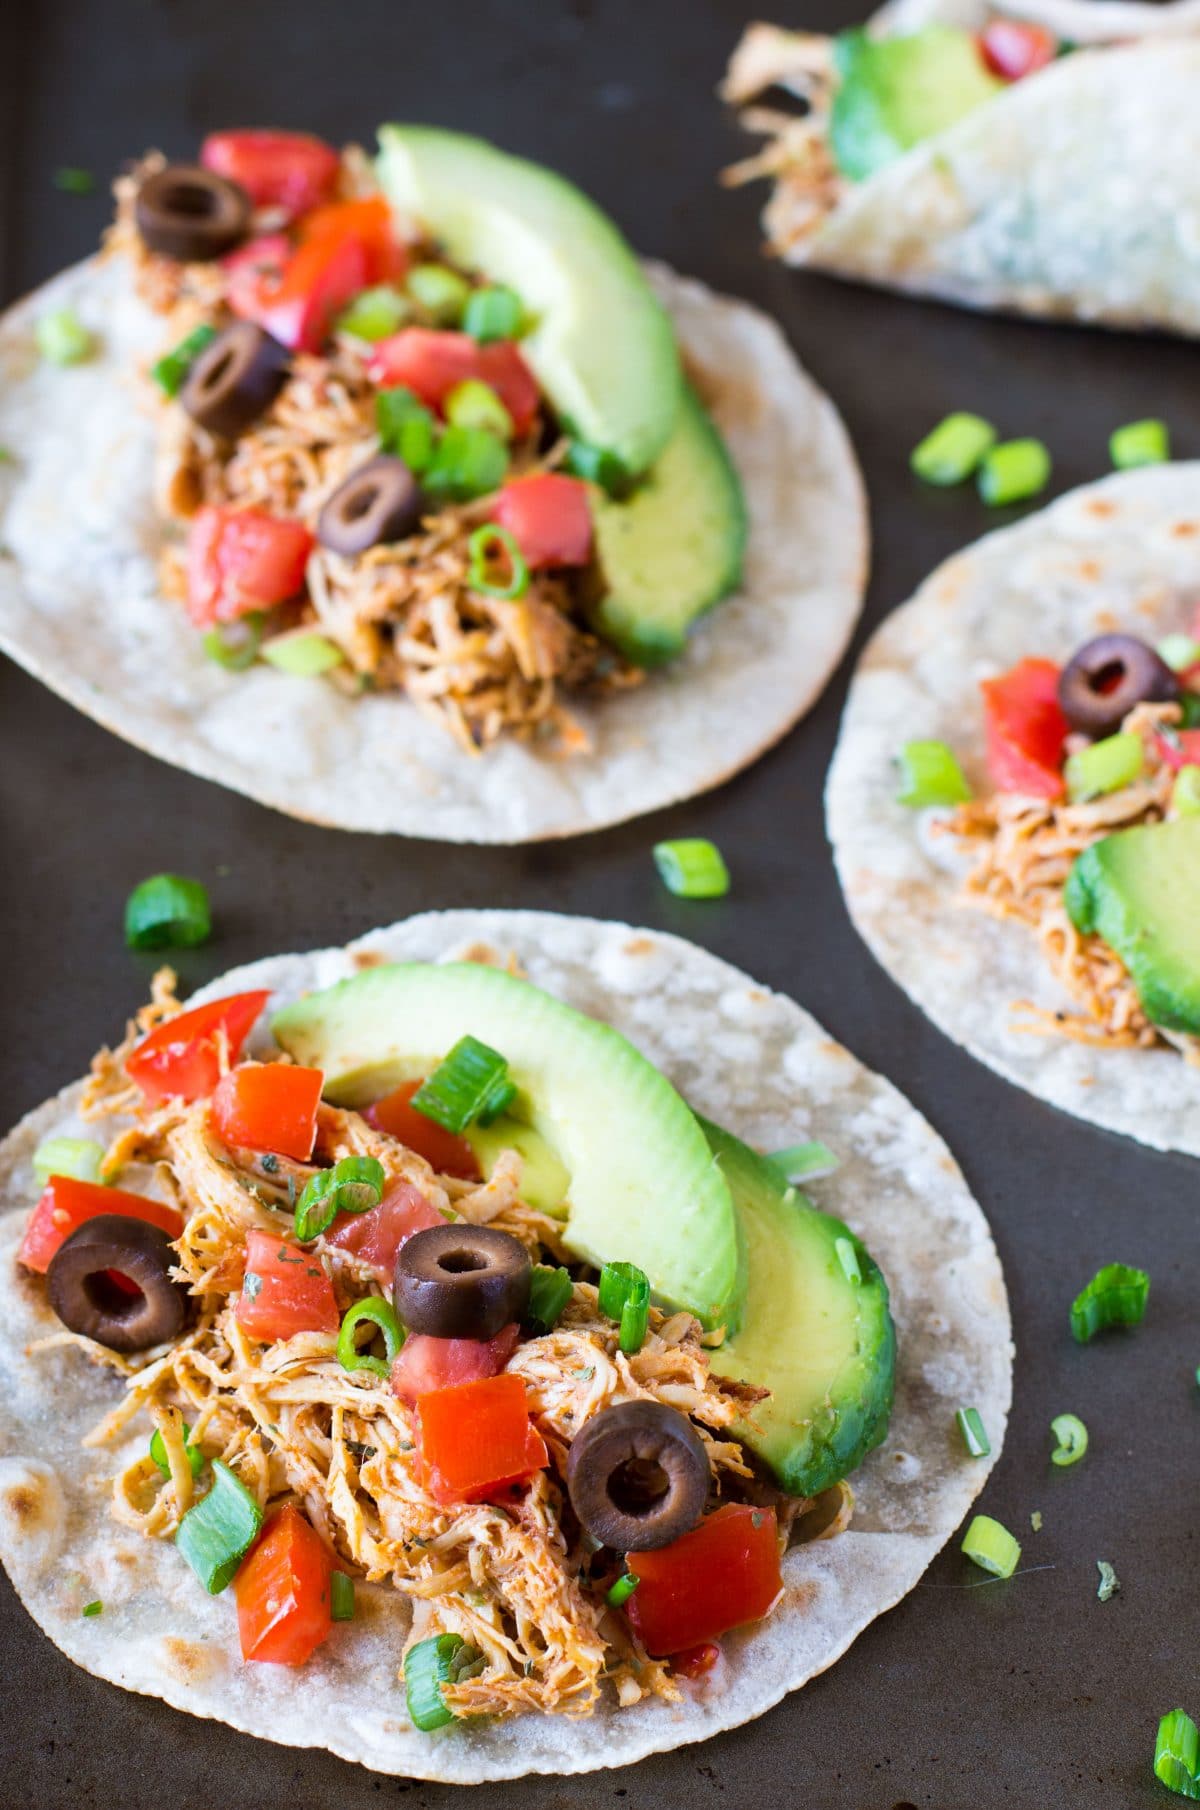 chipotle-chicken-tacos-image-healthy